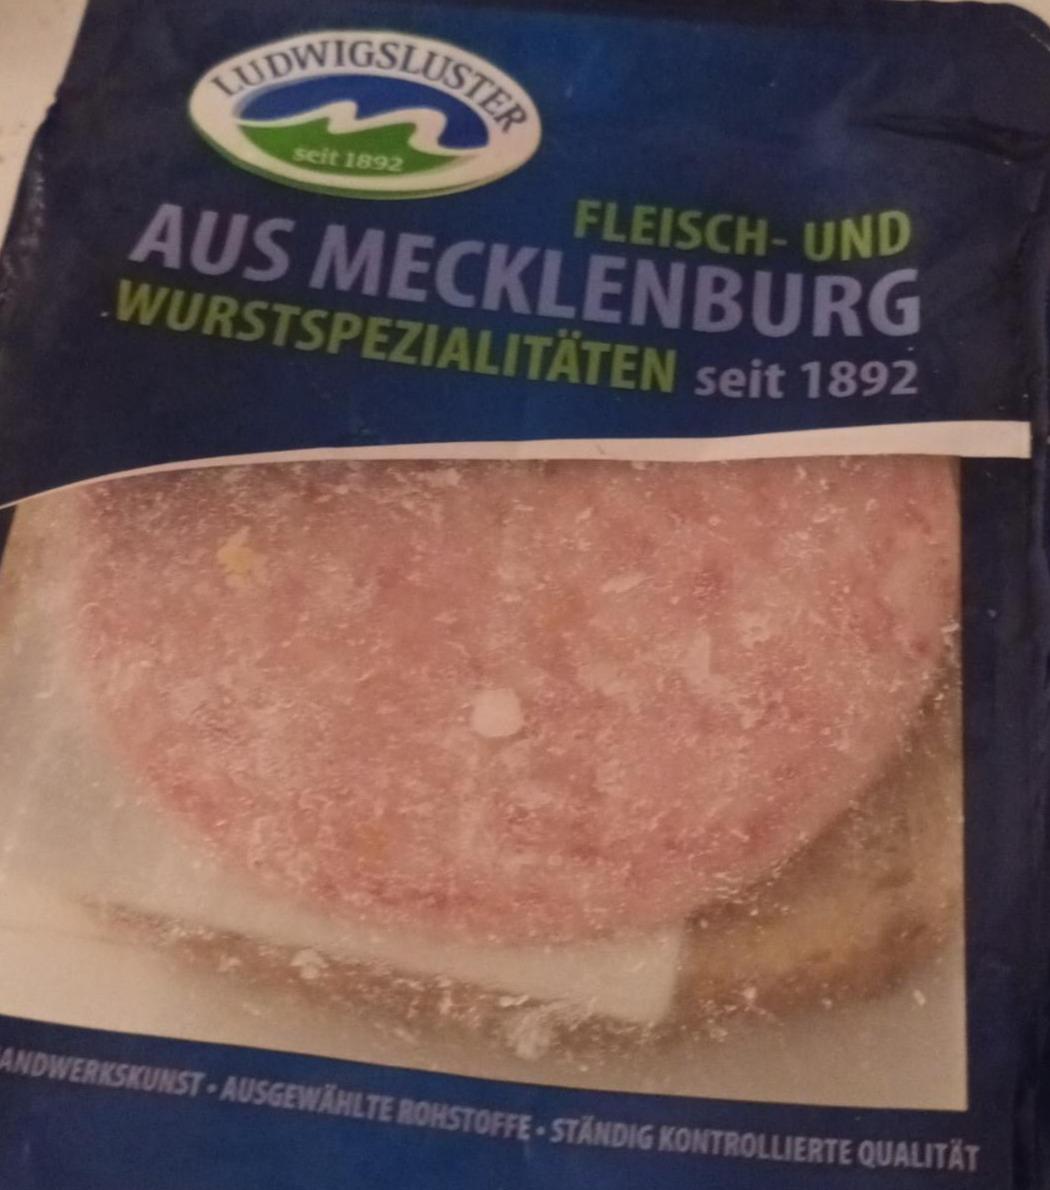 Zdjęcia - Fleisch und Wurstspezialitaten aus Mecklenburg Ludwigsluster